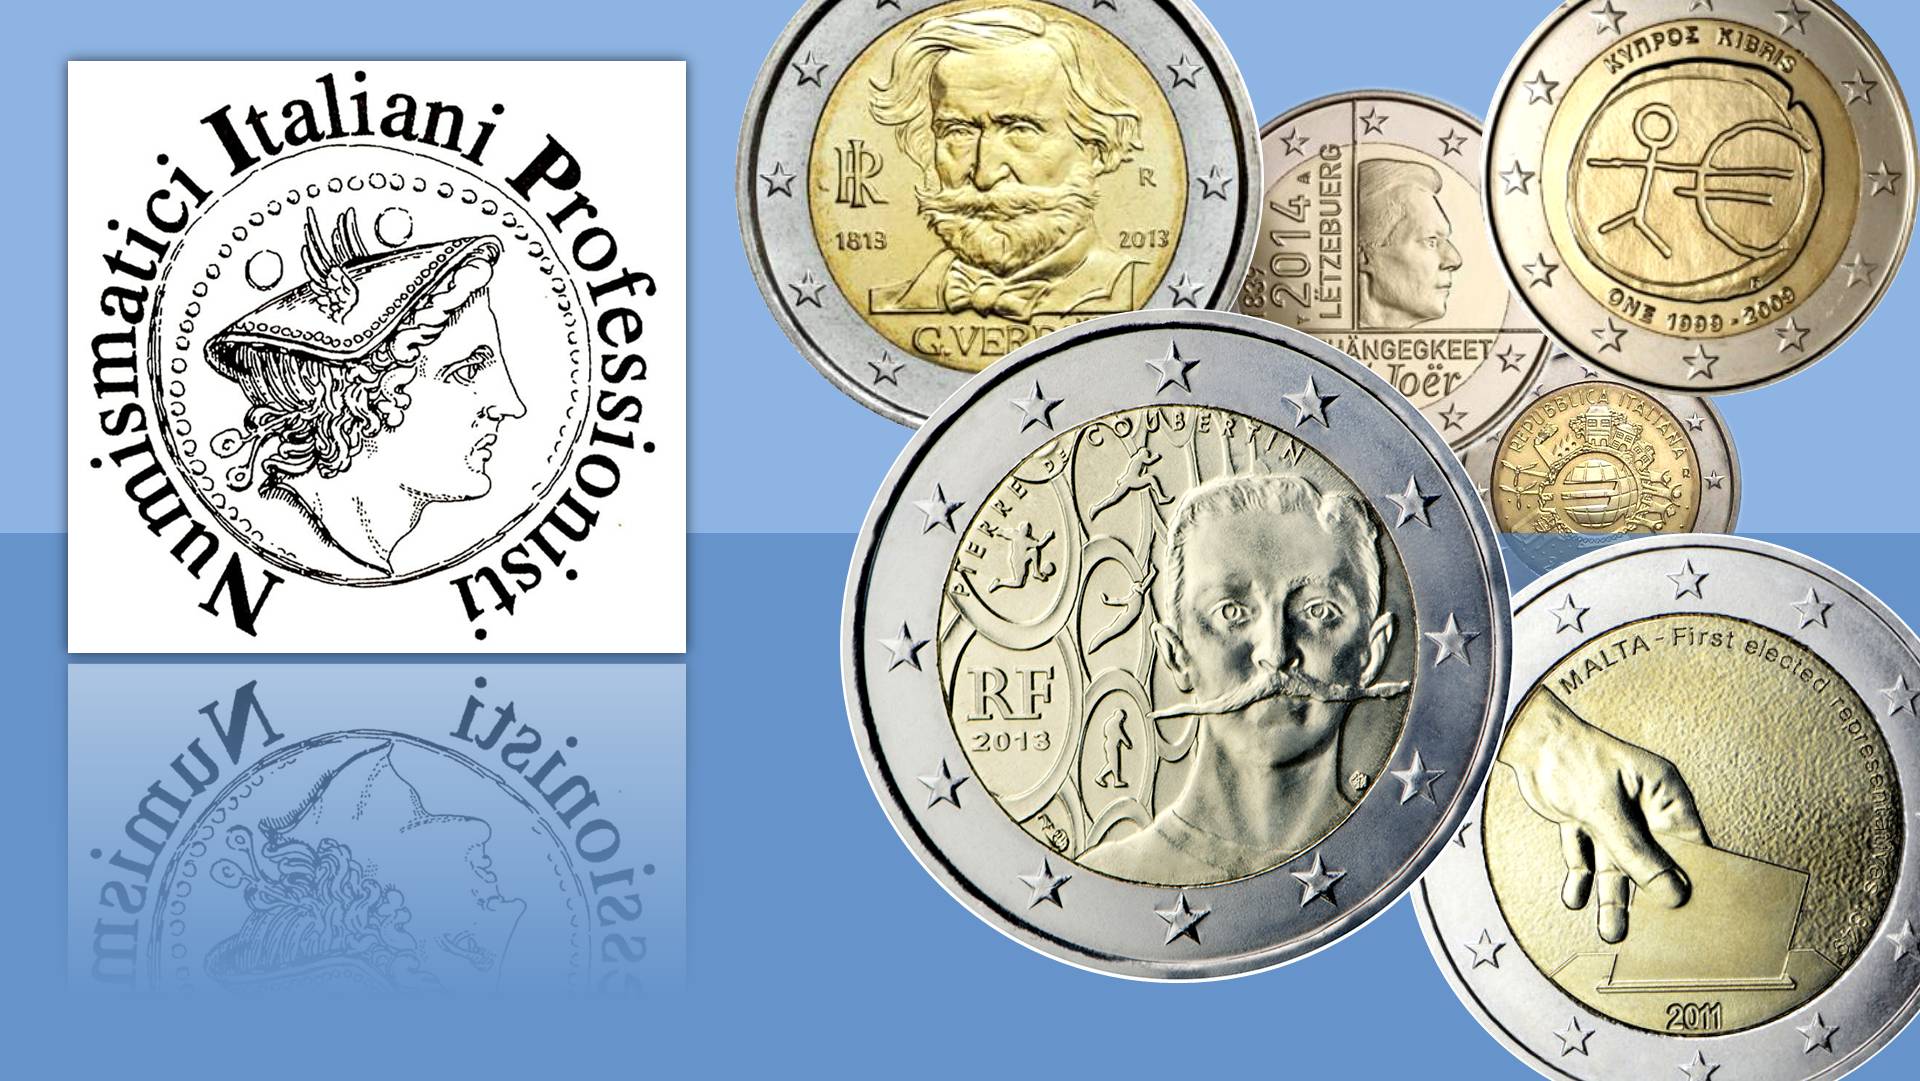 MONETE DA 2 EURO: dalla NIP alcune precisazioni sul VALORE COMMERCIALE